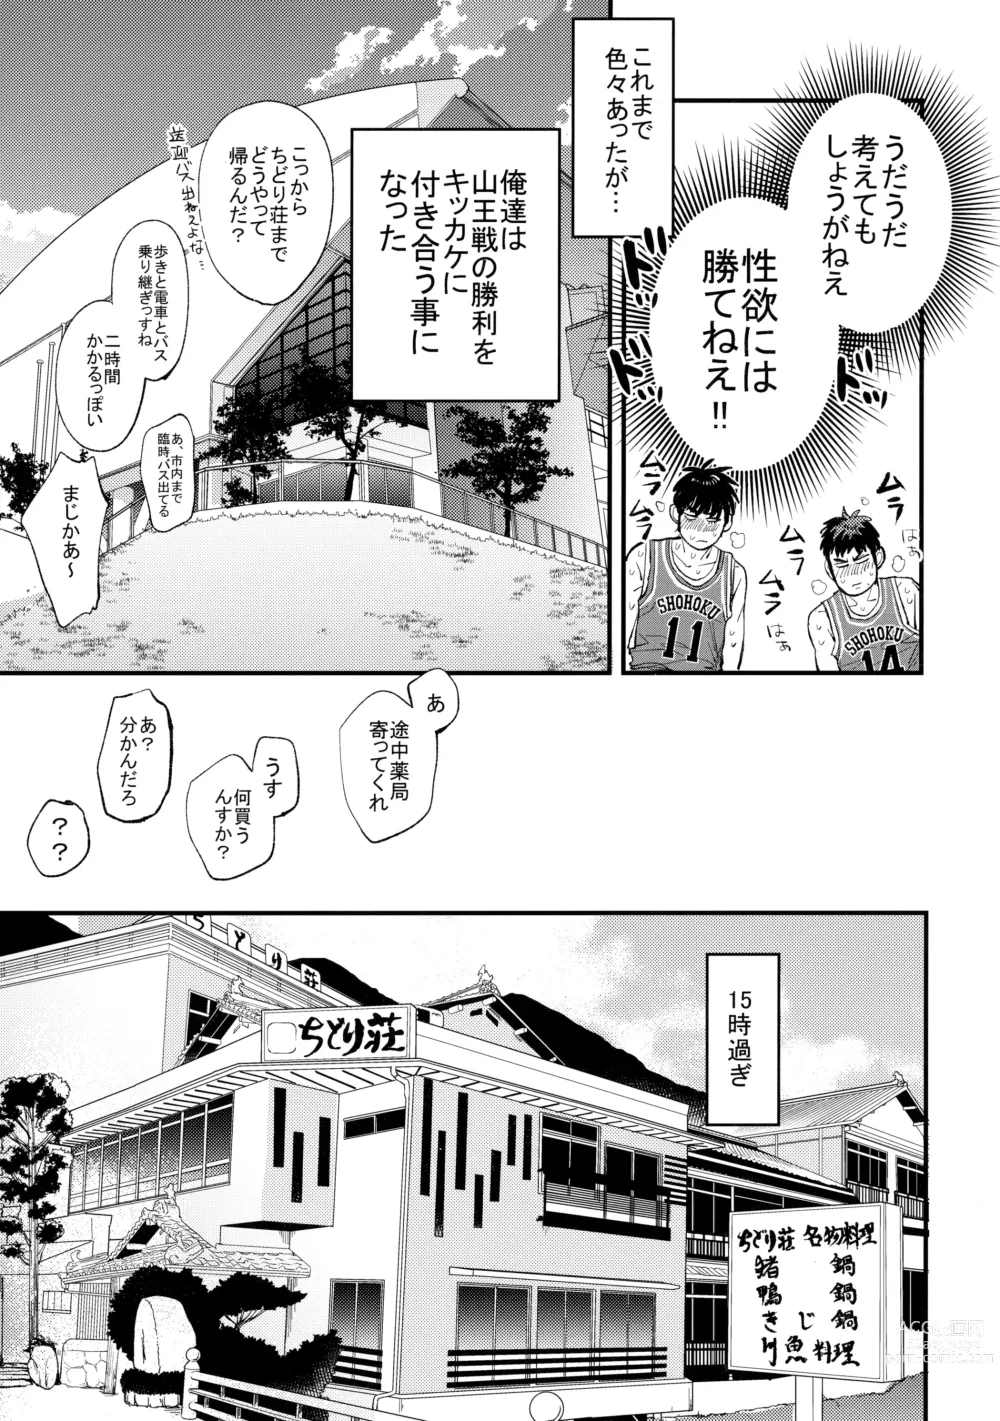 Page 16 of doujinshi Hajimete no,